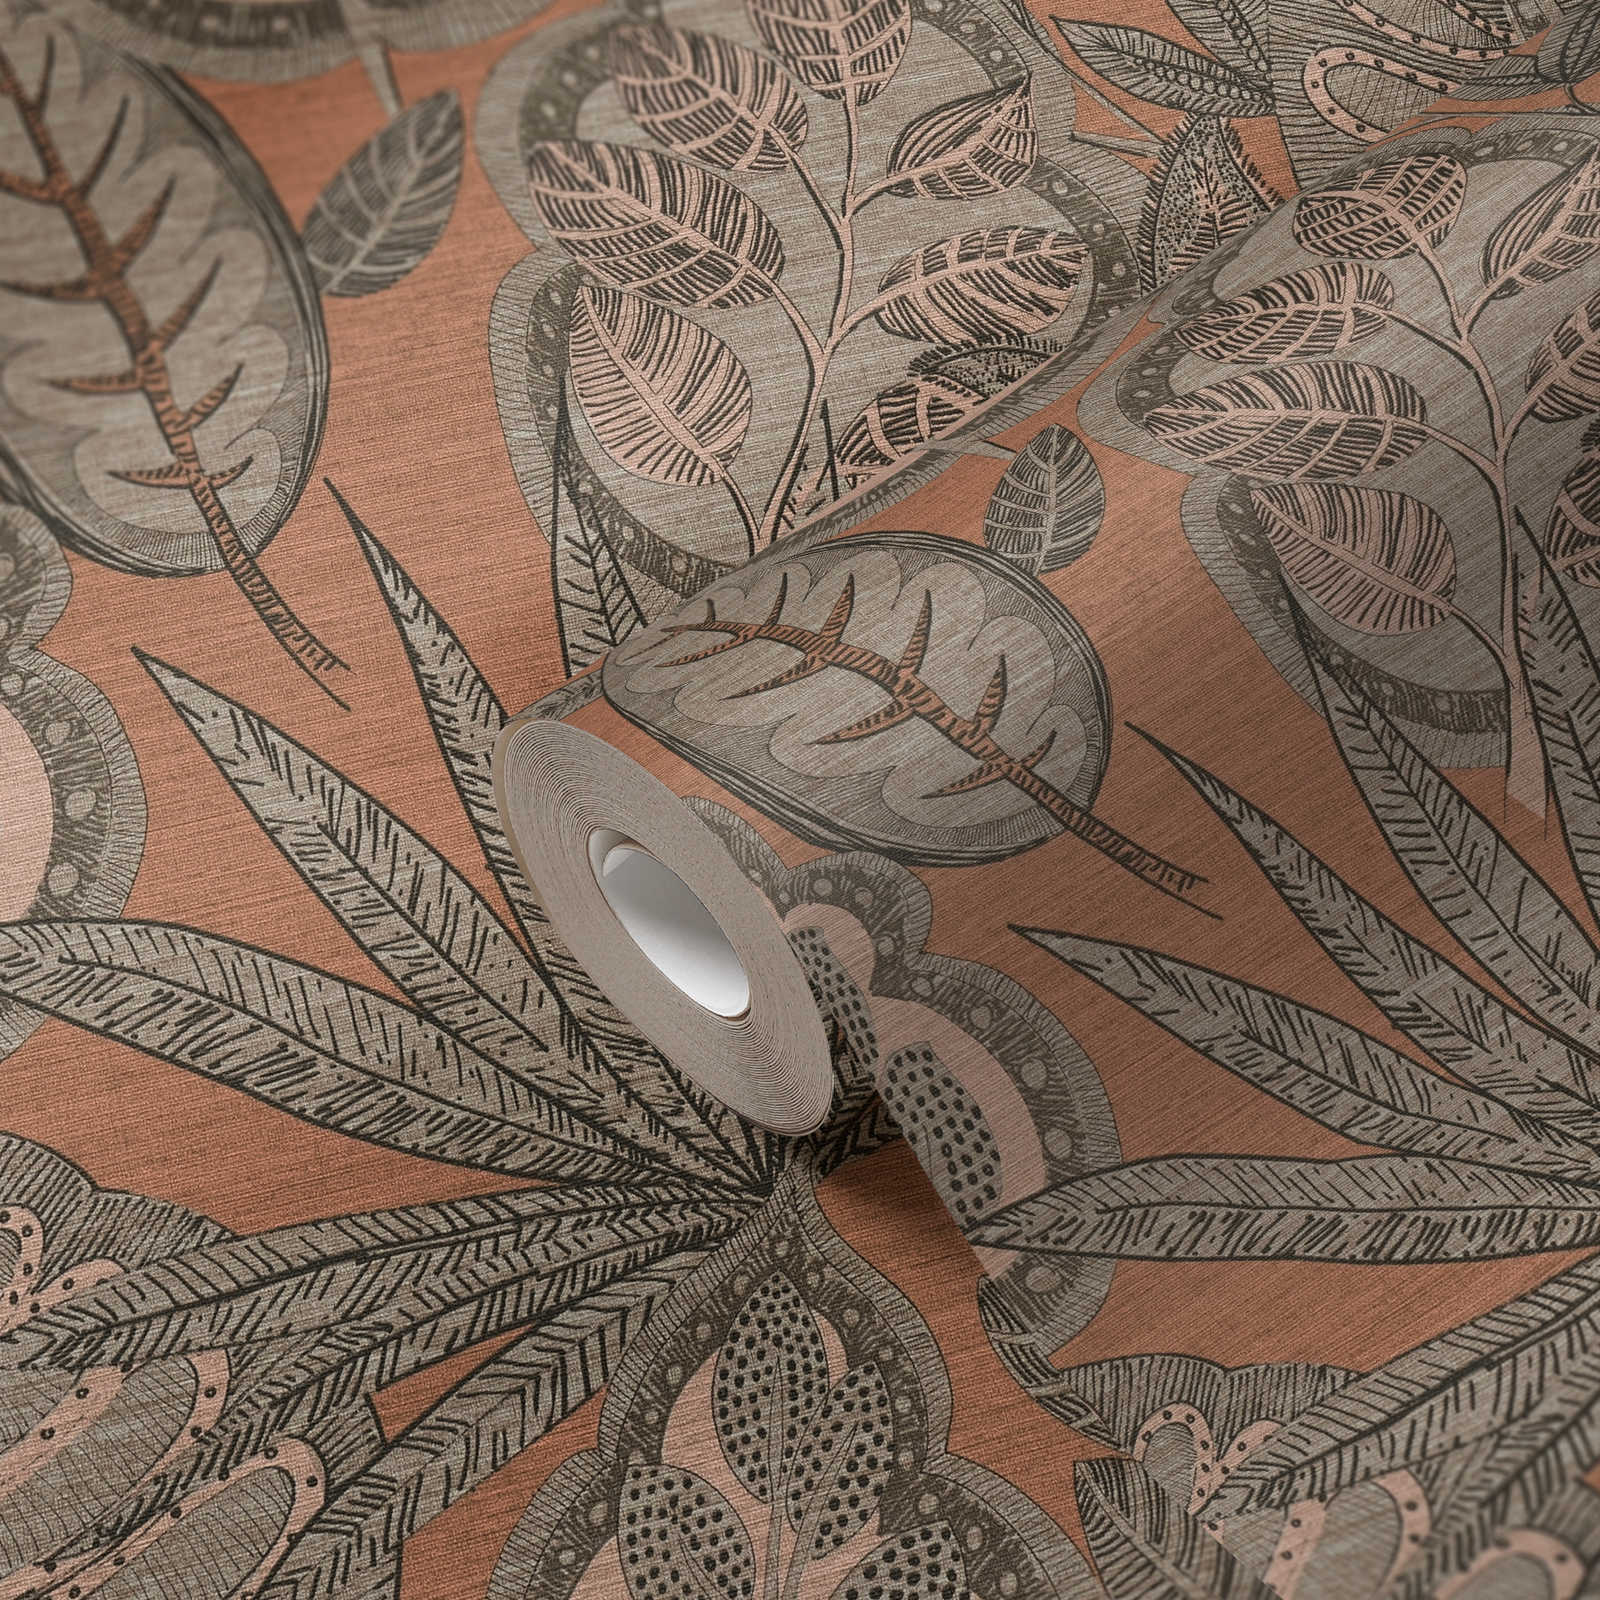             Vliestapete floral im grafischen Design mit leichter Struktur, matt – Rosa, Grau, Taupe
        